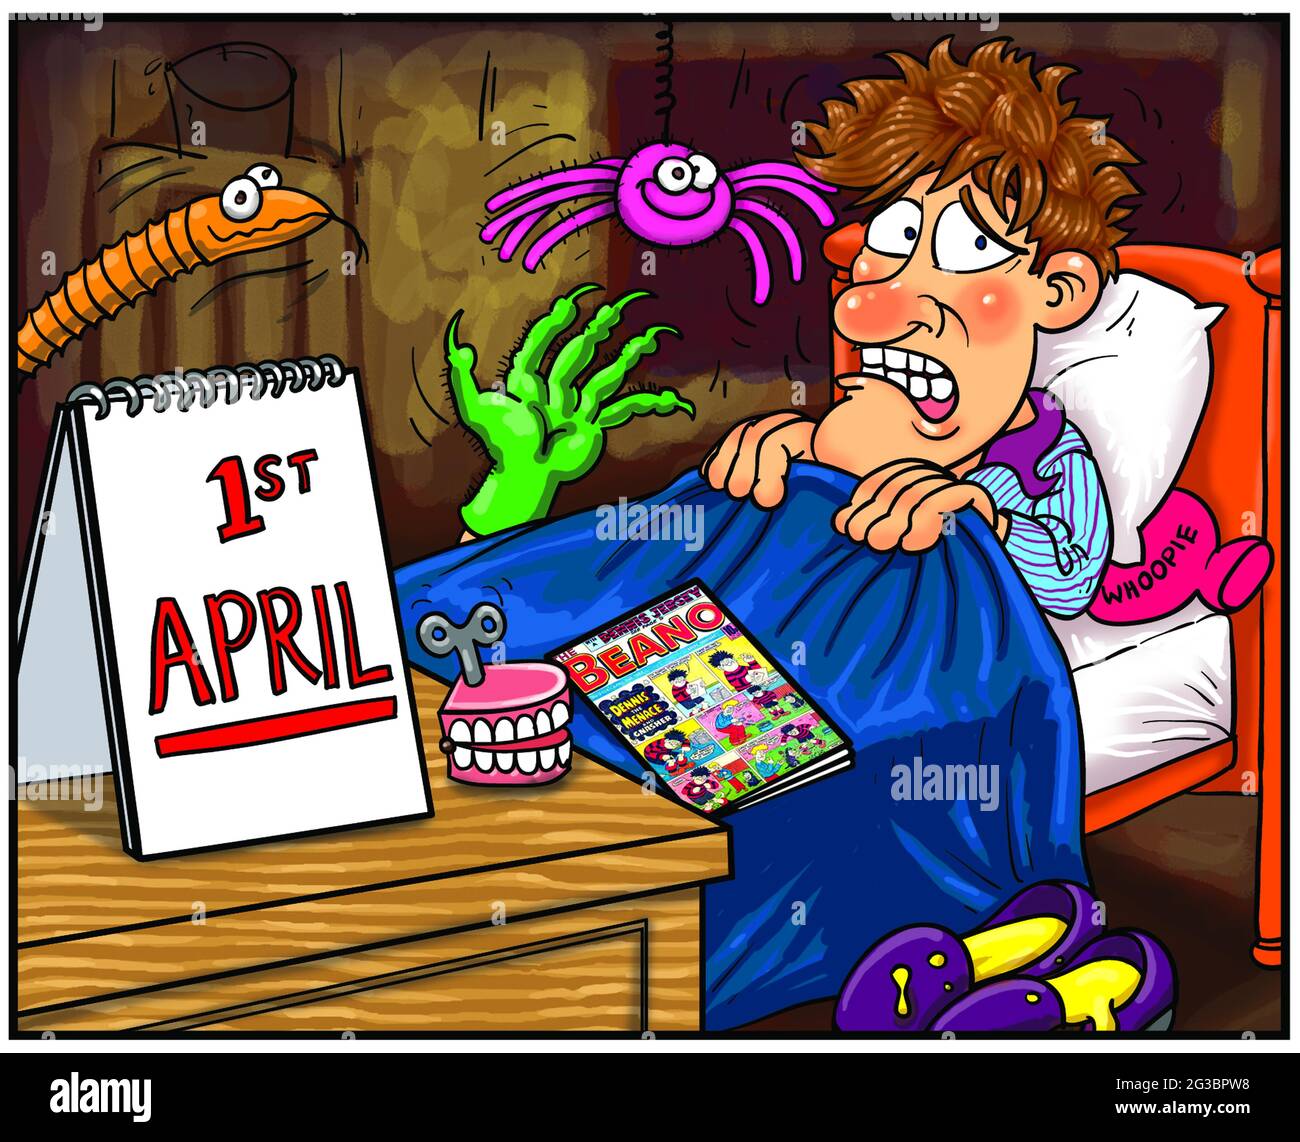 Kunstillustrationen Cartoon eines Jungen, der am 1. April aufwacht Narr's All Fool's Day, umgeben von praktischen Witzen Pharsaphobia ist die Angst vor Streiks Stockfoto